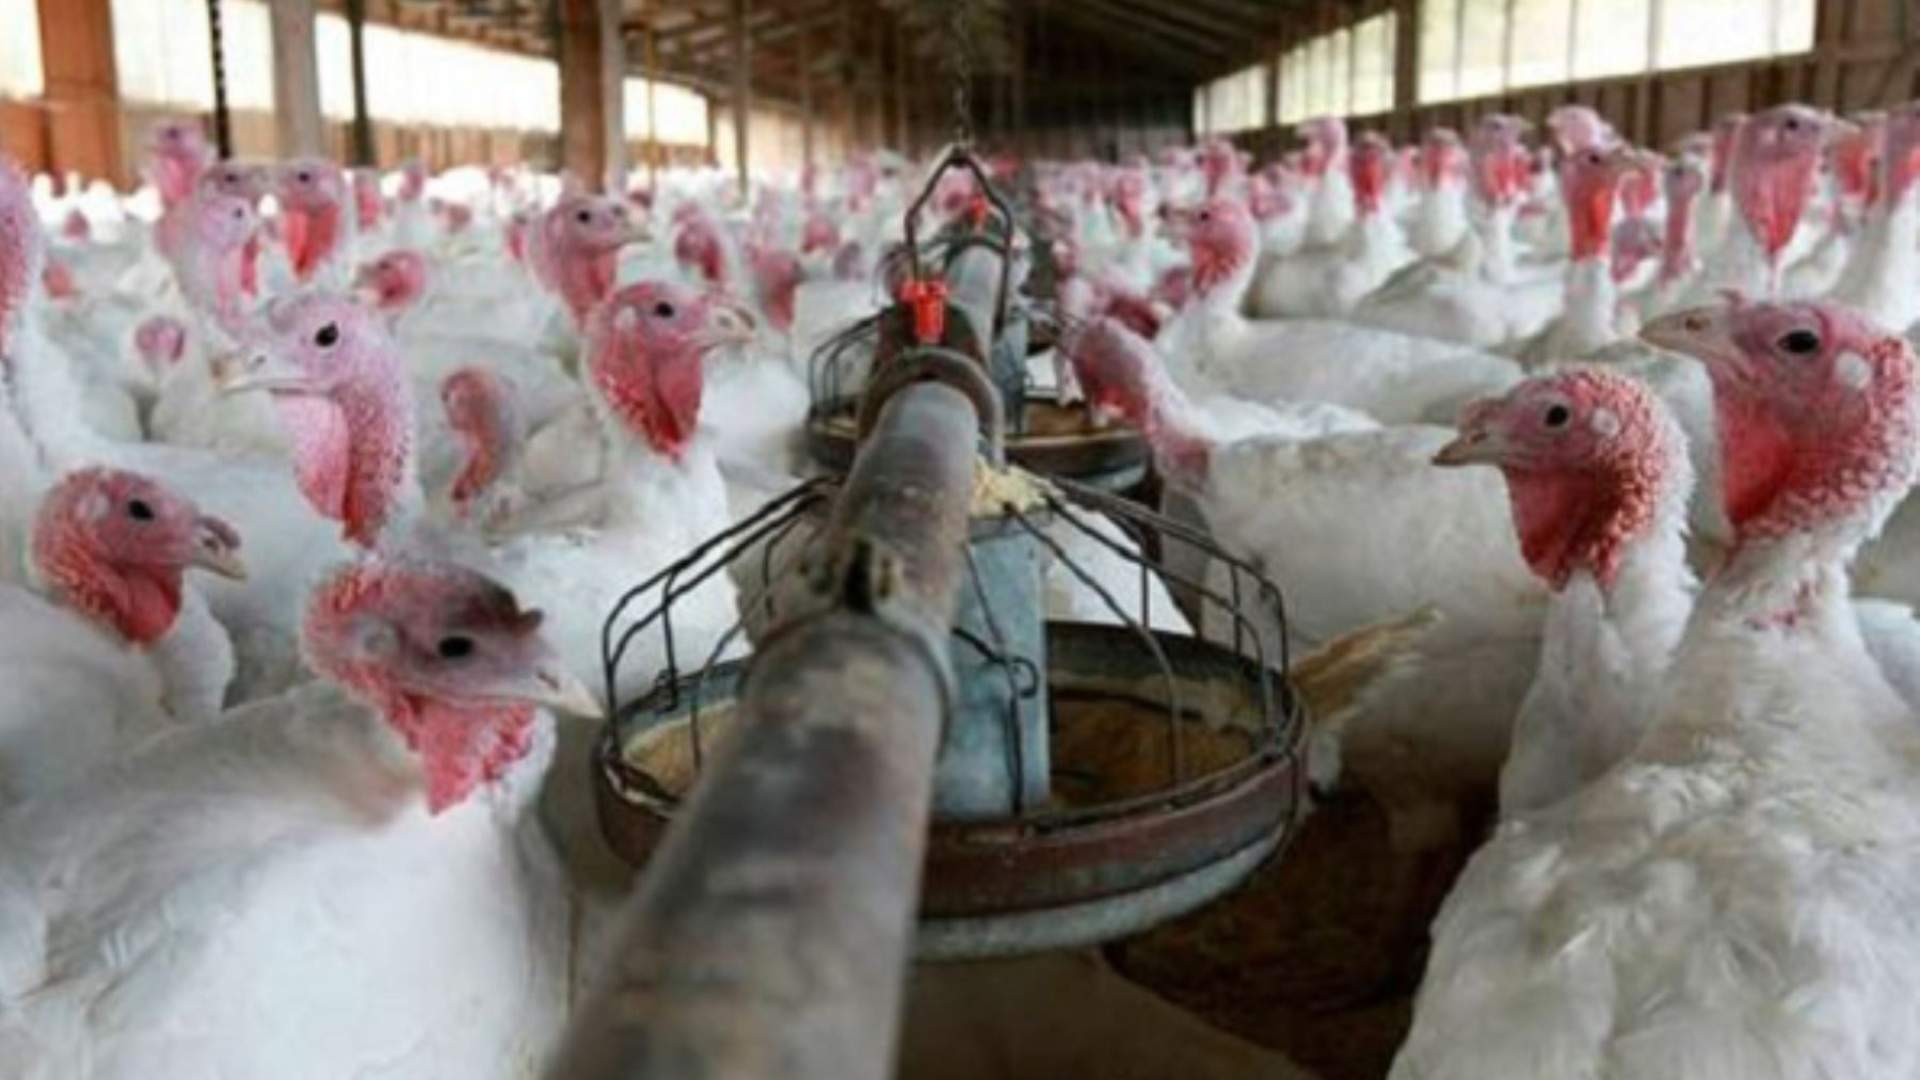 Monitorear las rutas migratorias de aves silvestres y los criaderos agrícolas de aves domésticas son medidas claves para la prevención y la contención de brotes de gripe aviar